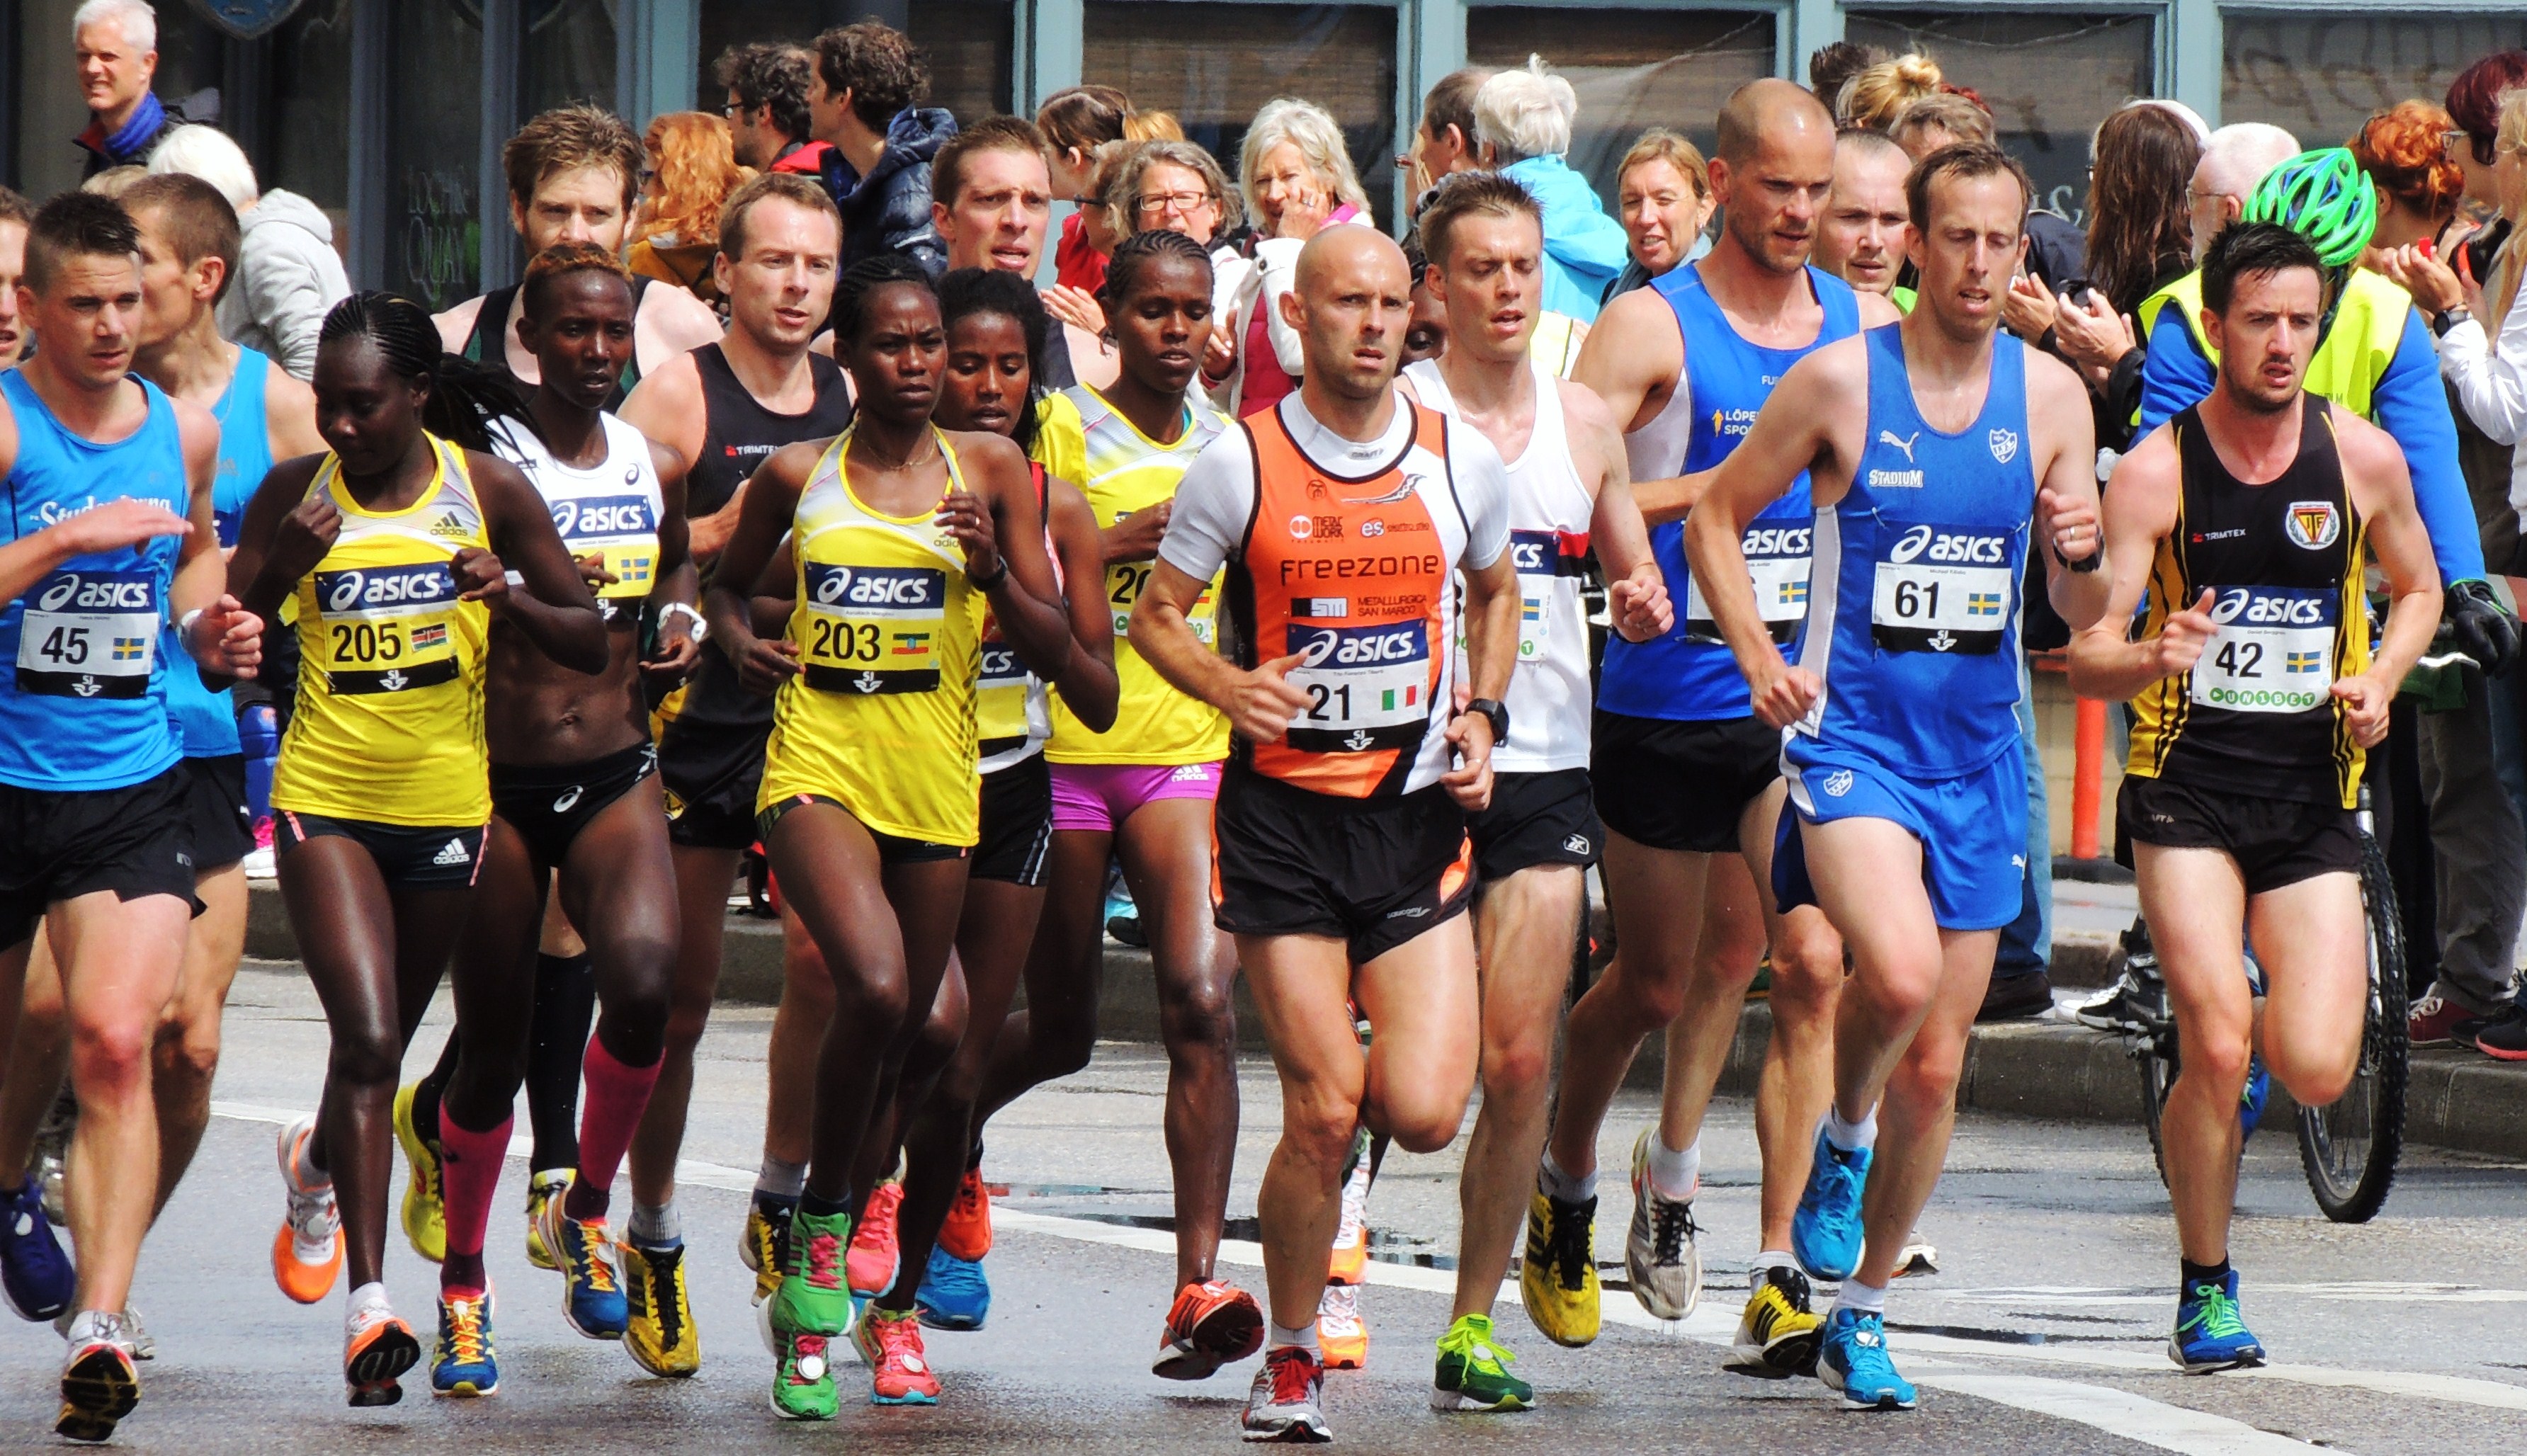 New York City Marathon: Mary Keitany Wins Women's Race | The Hot Zone